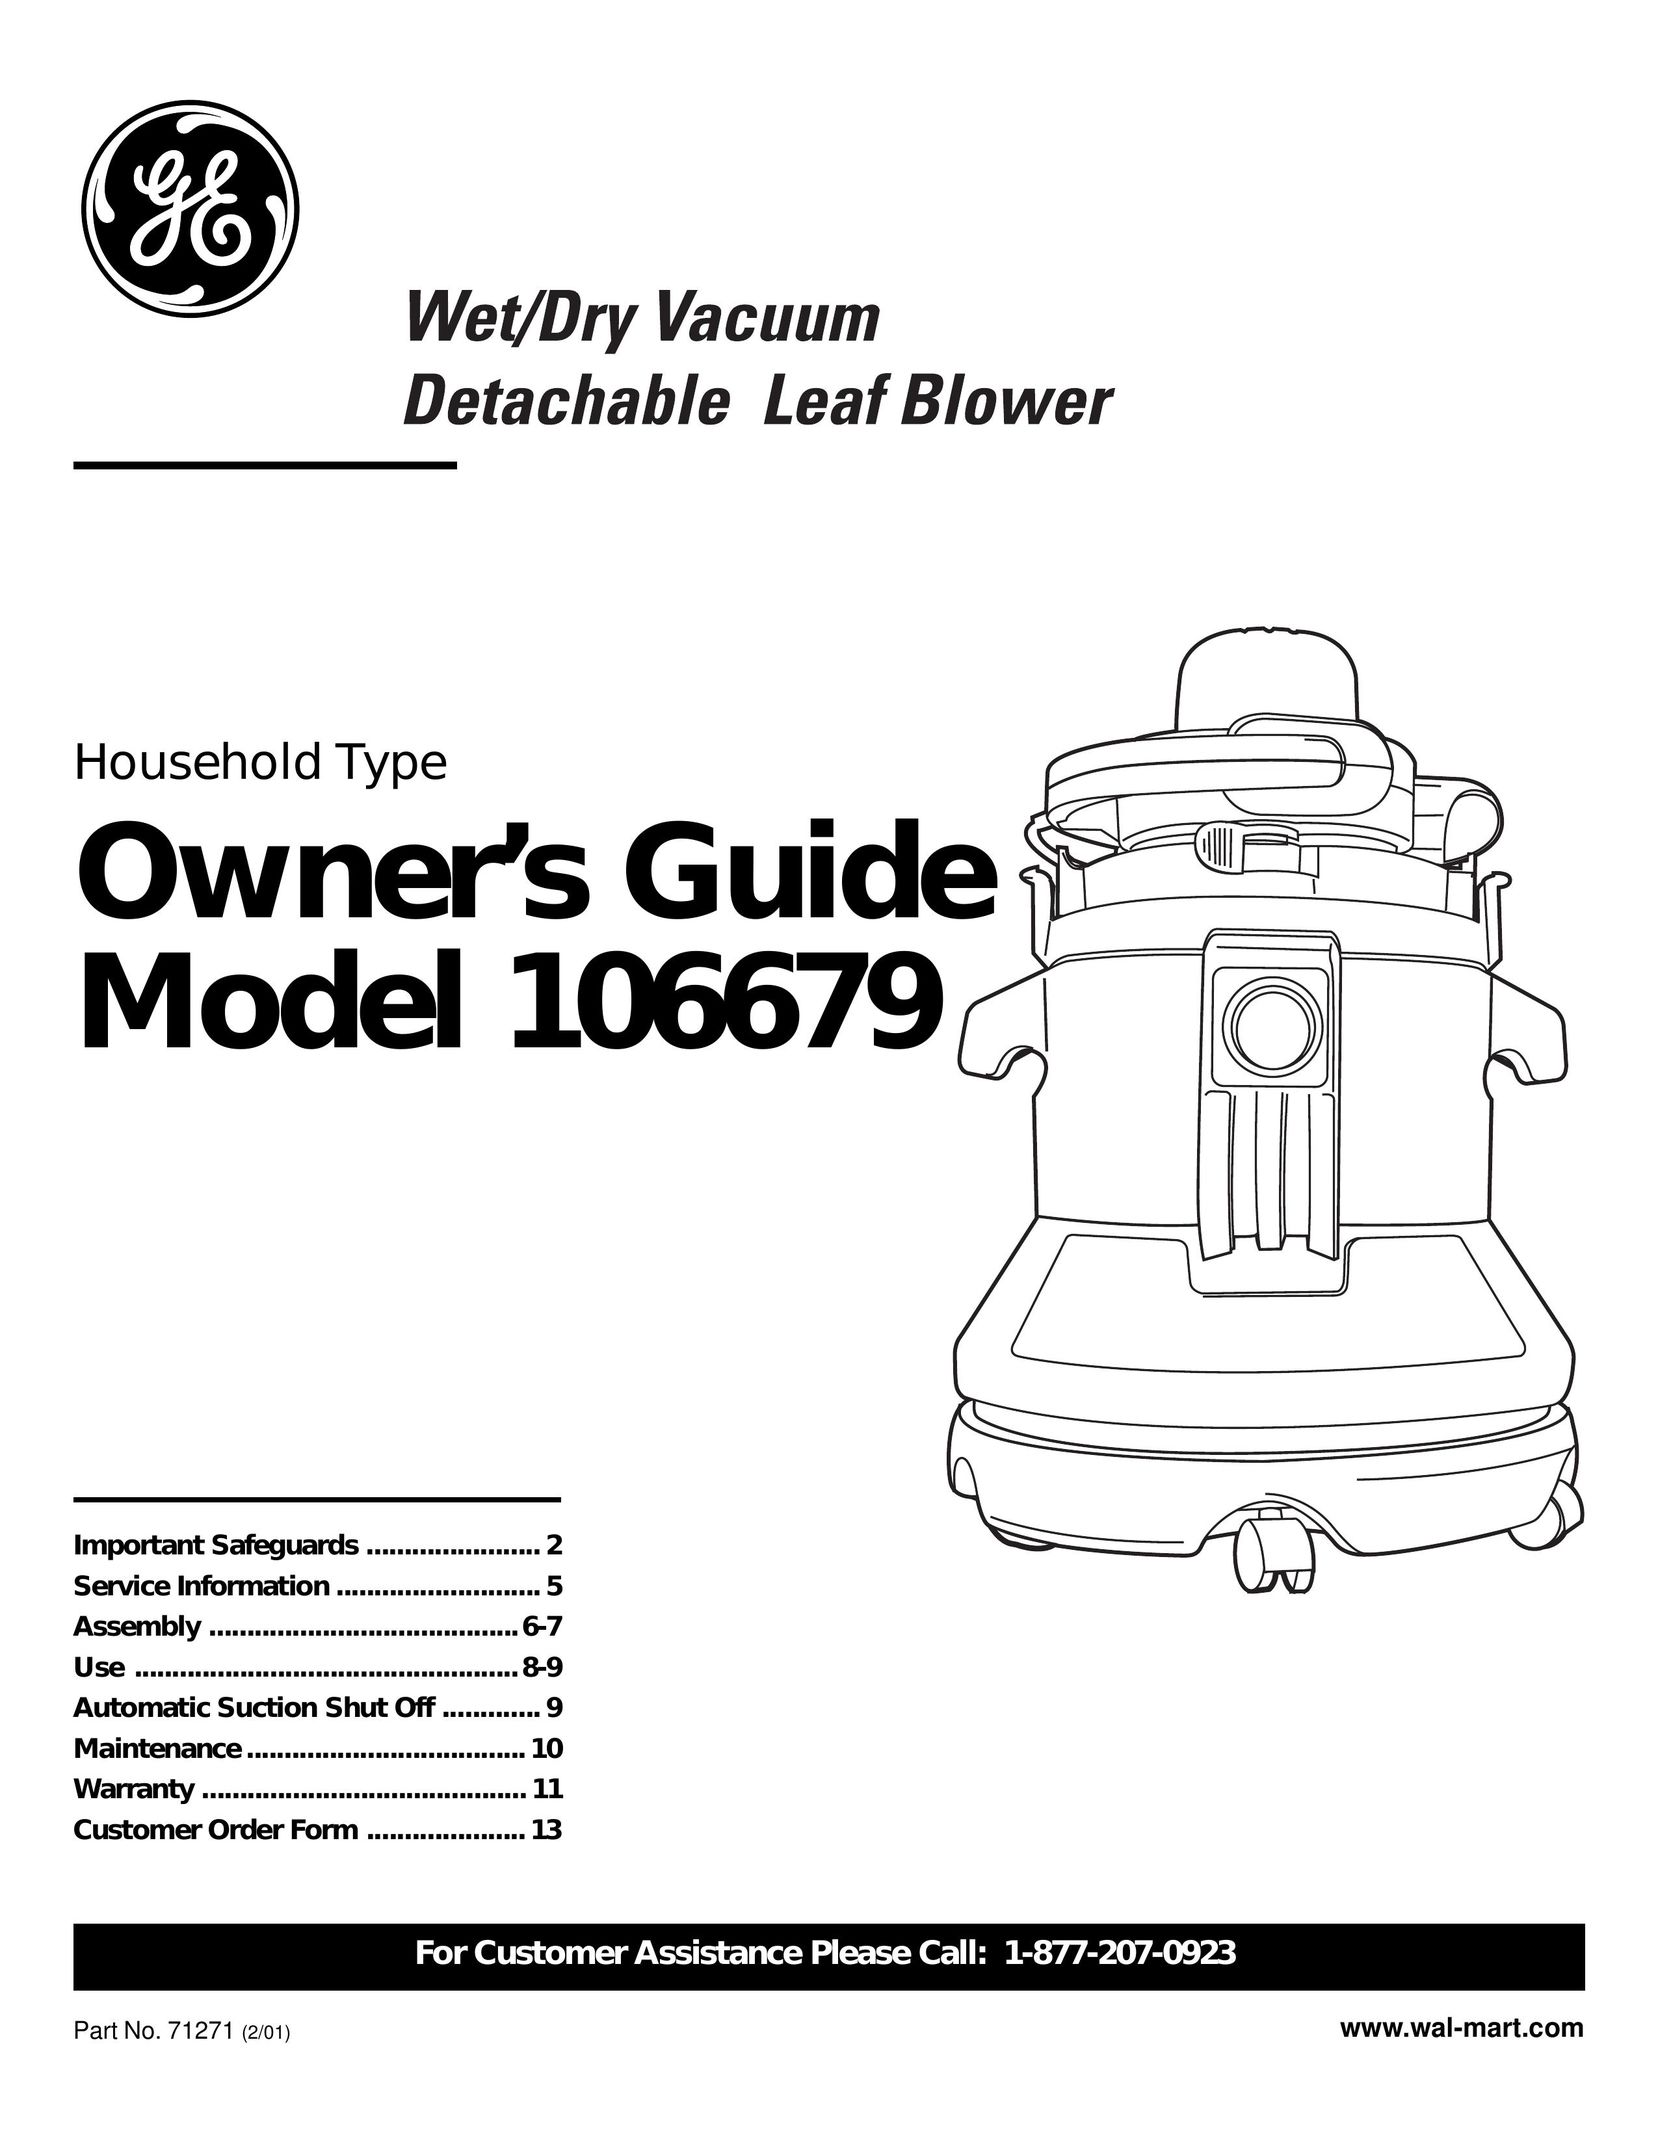 GE 106679 Vacuum Cleaner User Manual